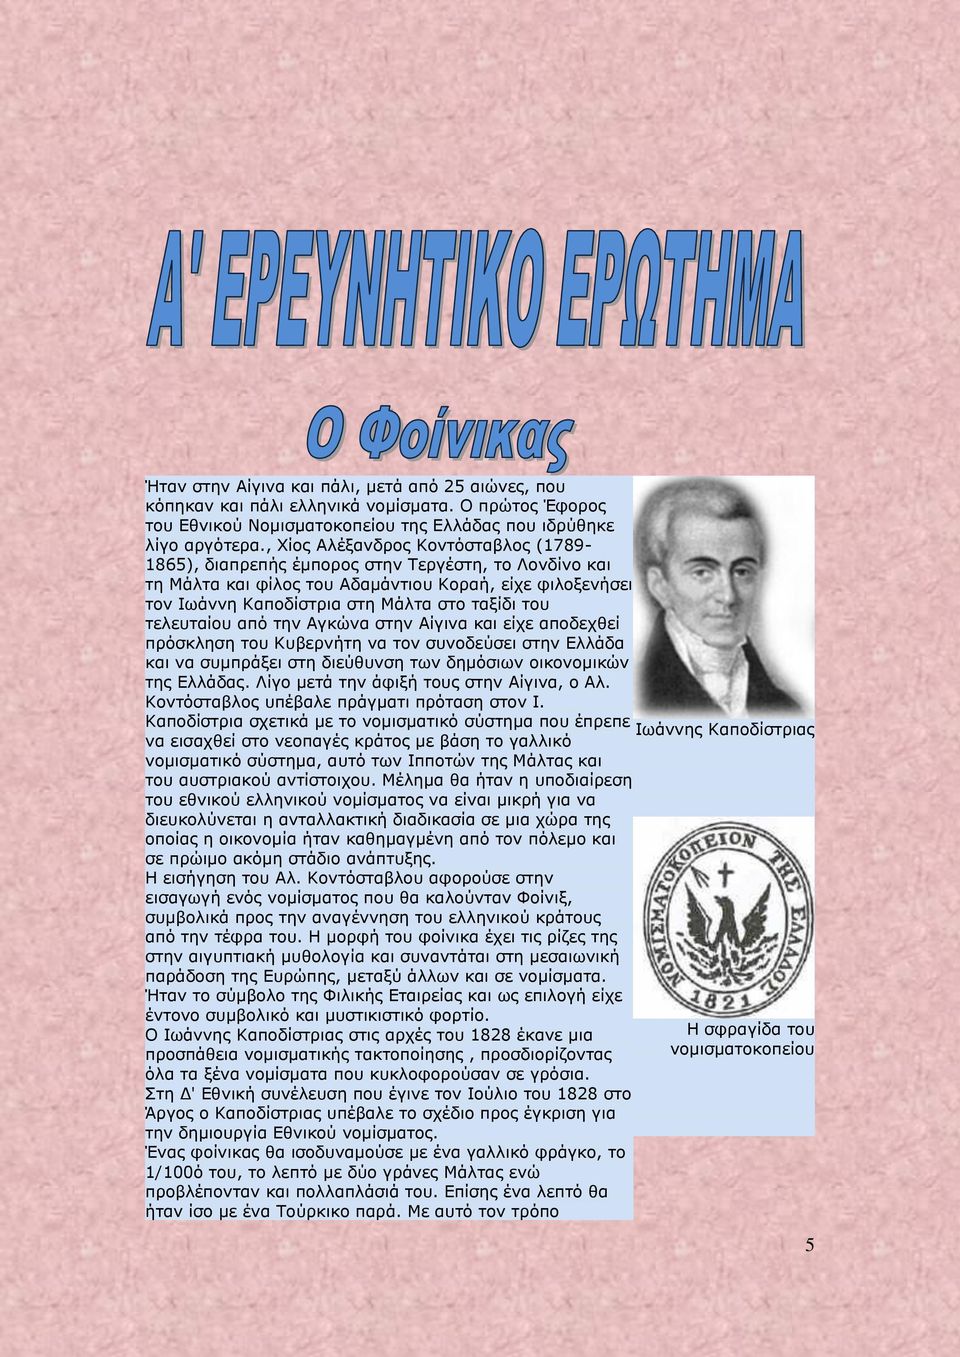 τελευταίου από την Αγκώνα στην Αίγινα και είχε αποδεχθεί πρόσκληση του Κυβερνήτη να τον συνοδεύσει στην Ελλάδα και να συμπράξει στη διεύθυνση των δημόσιων οικονομικών της Ελλάδας.